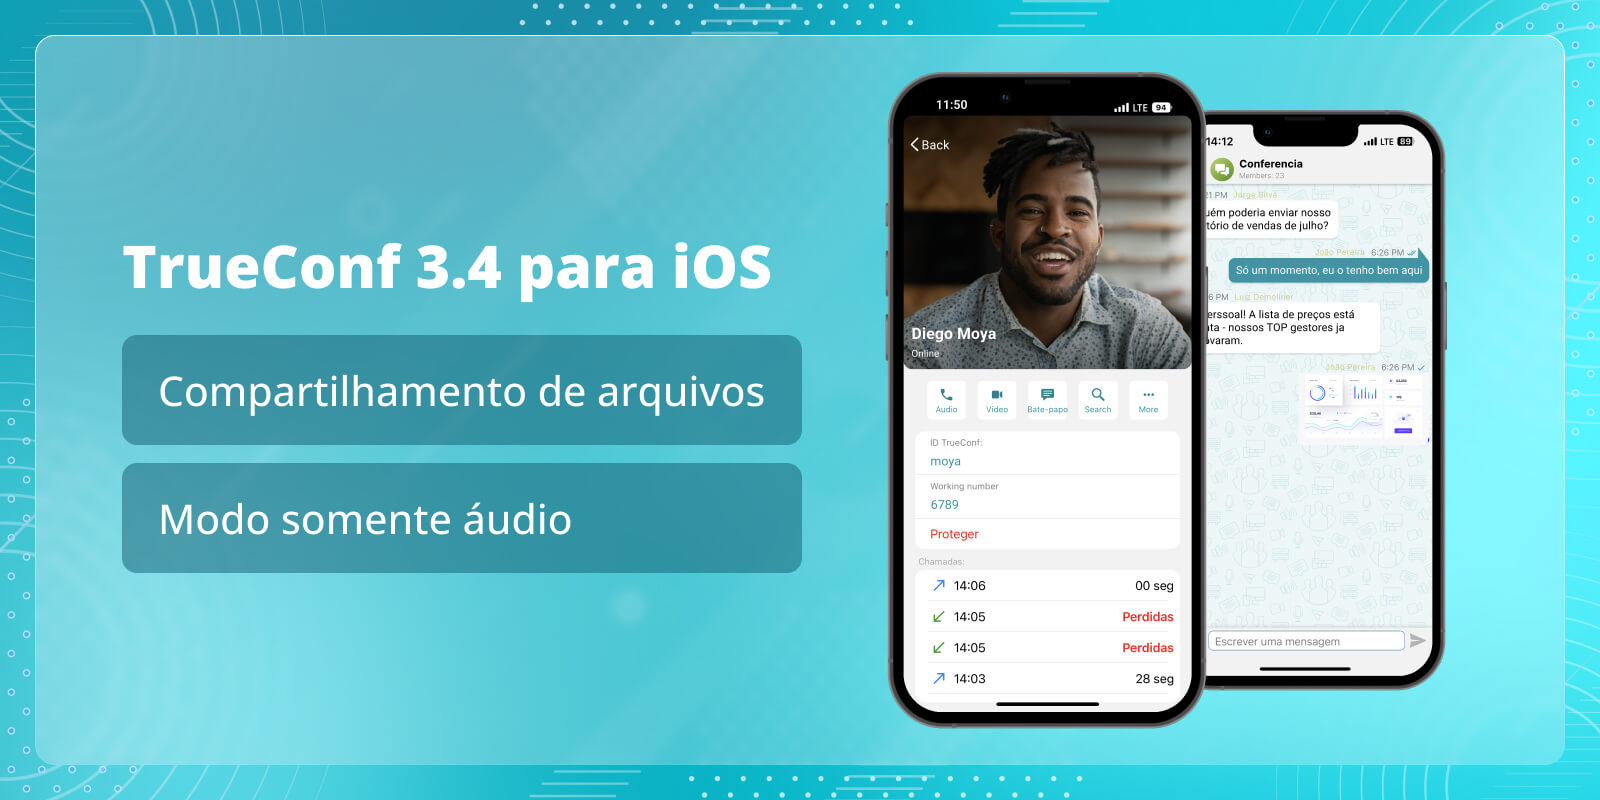 TrueConf 3.4 para iOS: compartilhamento de arquivos e modo somente áudio 1